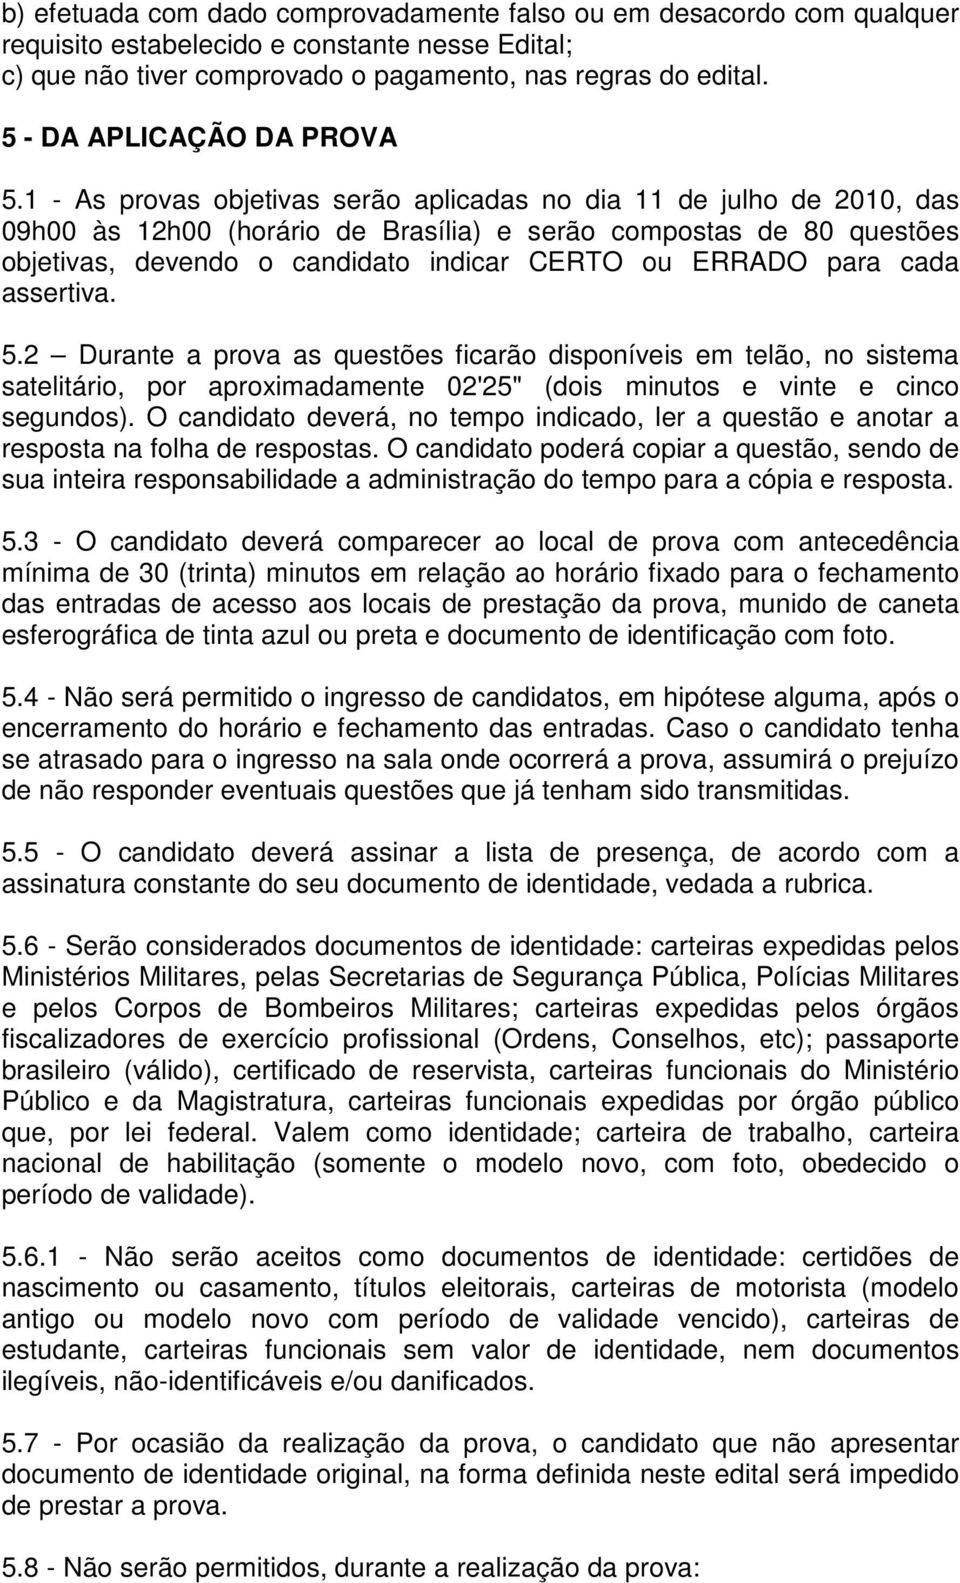 1 - As provas objetivas serão aplicadas no dia 11 de julho de 2010, das 09h00 às 12h00 (horário de Brasília) e serão compostas de 80 questões objetivas, devendo o candidato indicar CERTO ou ERRADO